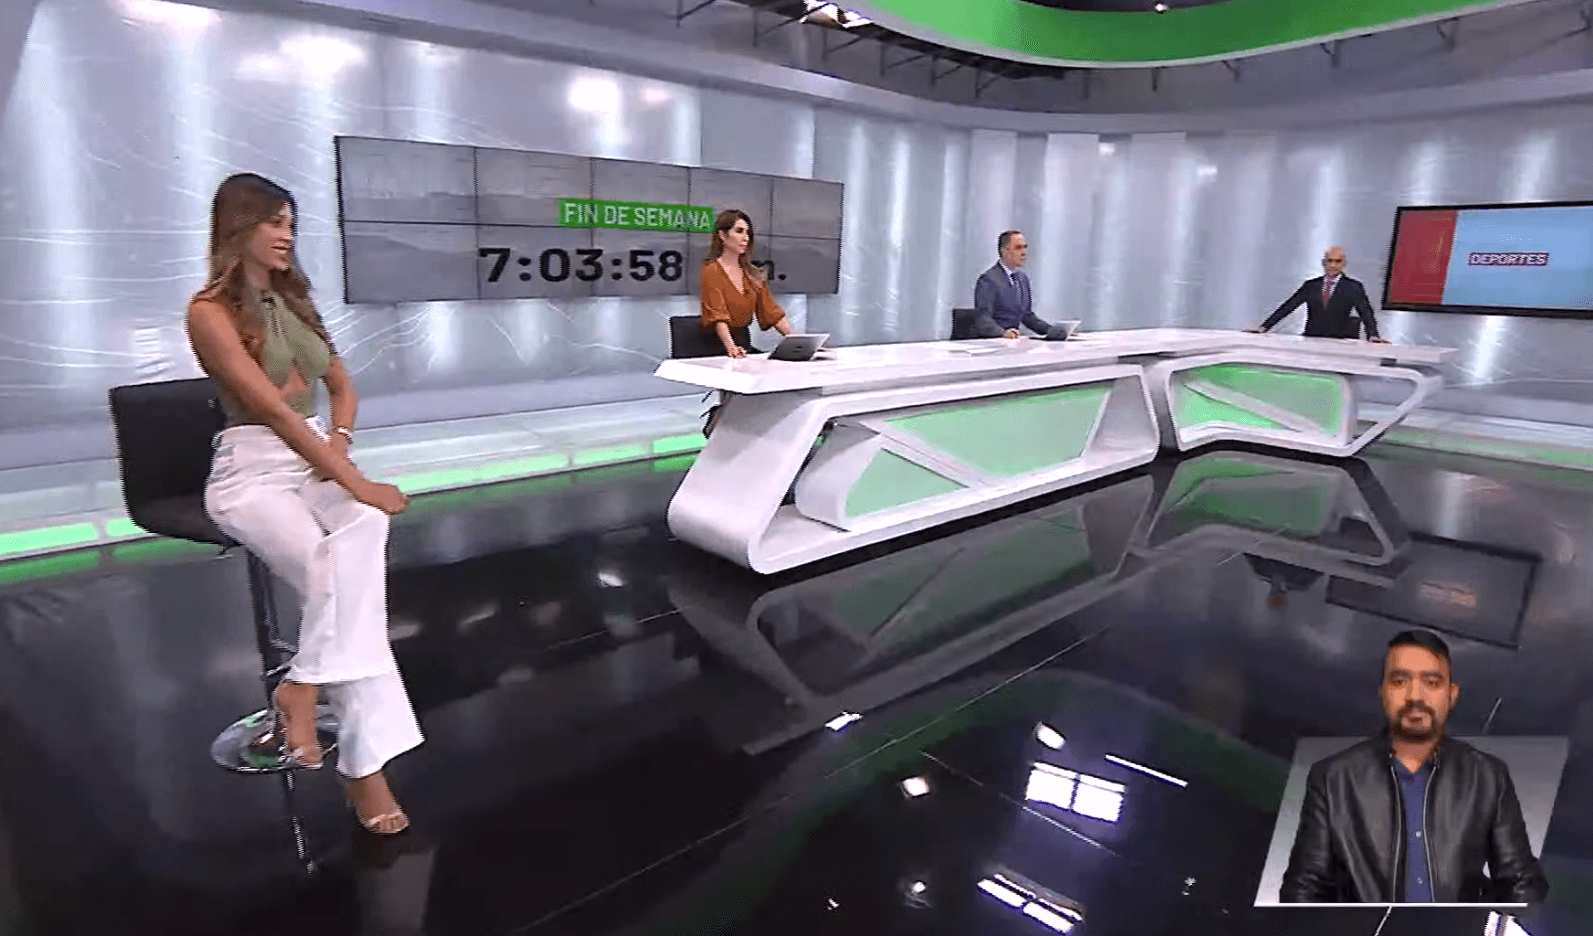 Teleantioquia Noticias – Domingo 20 de junio de 2021 noche